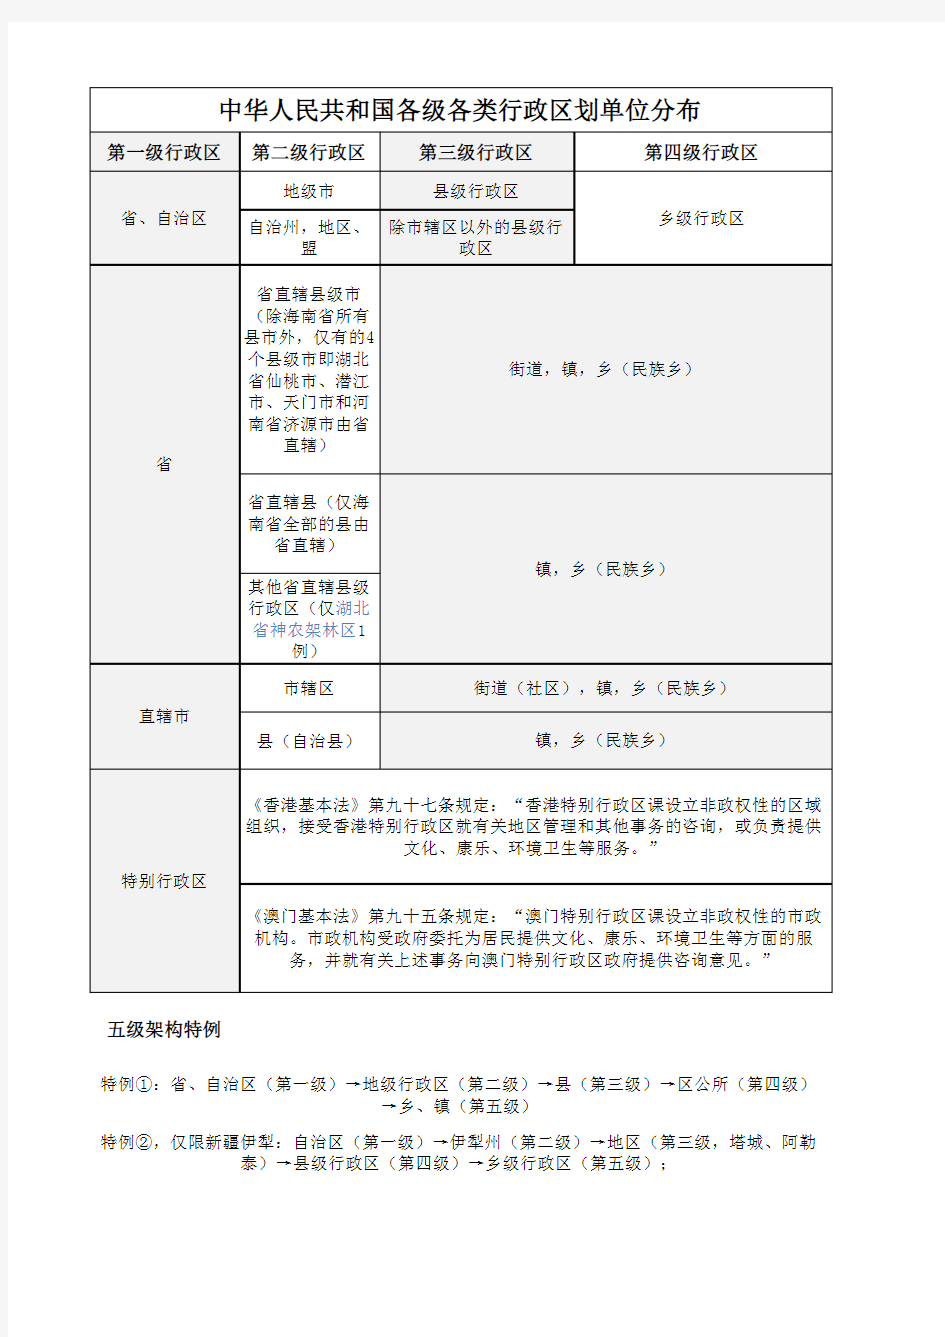 中华人民共和国各级各类行政区划单位分布